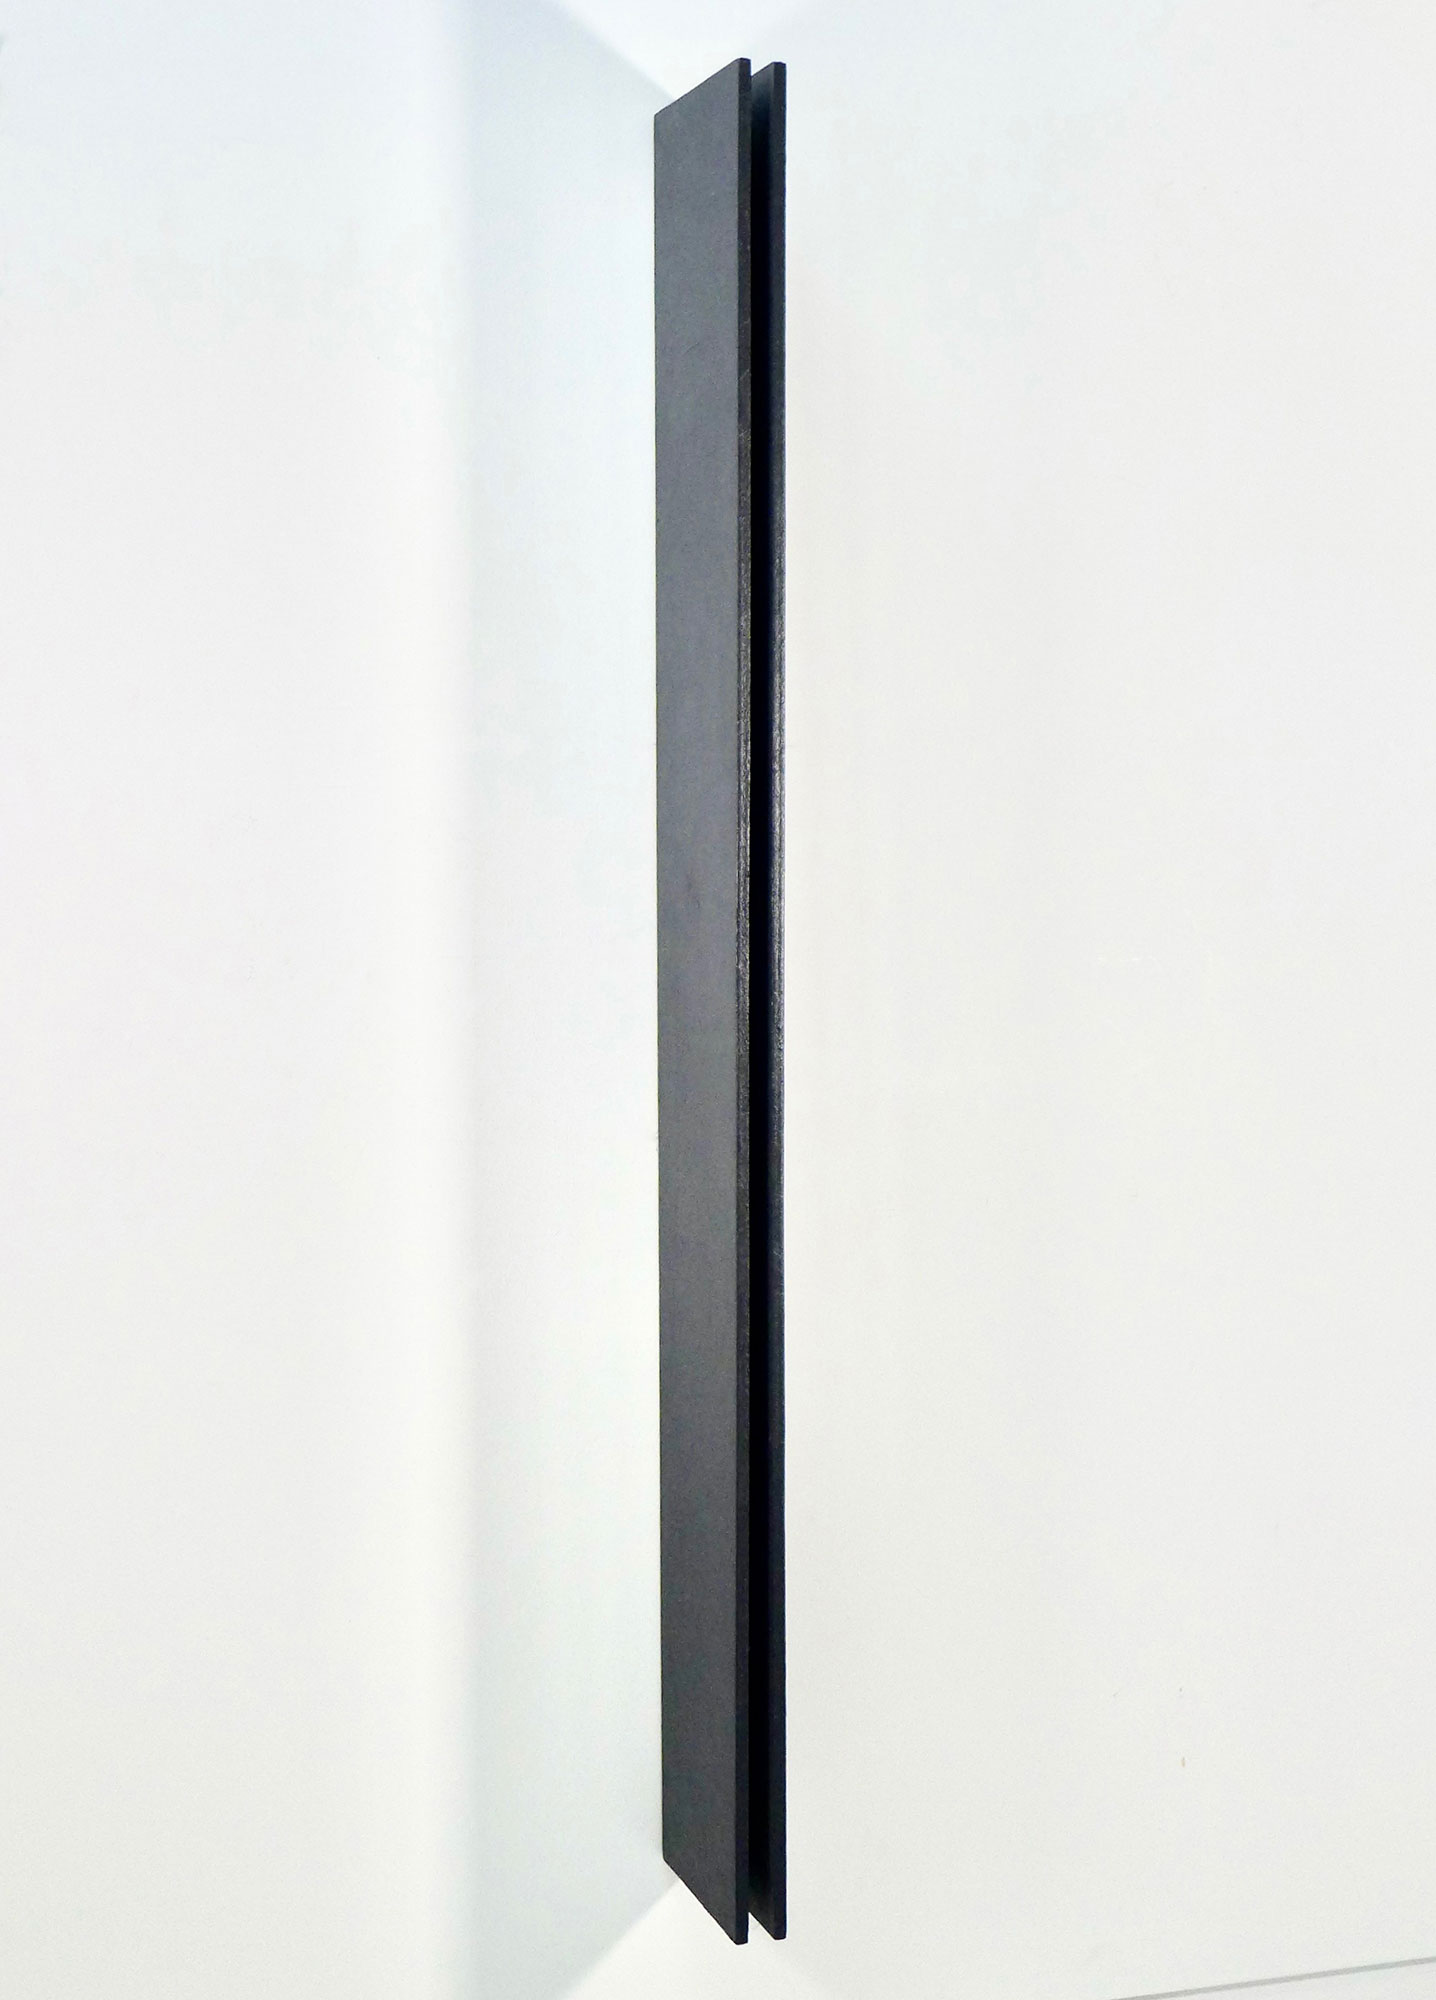 Kenneth Dingwall, Shield, 1977, acrylic on wood, 160cm x 4.5cm x 20cm